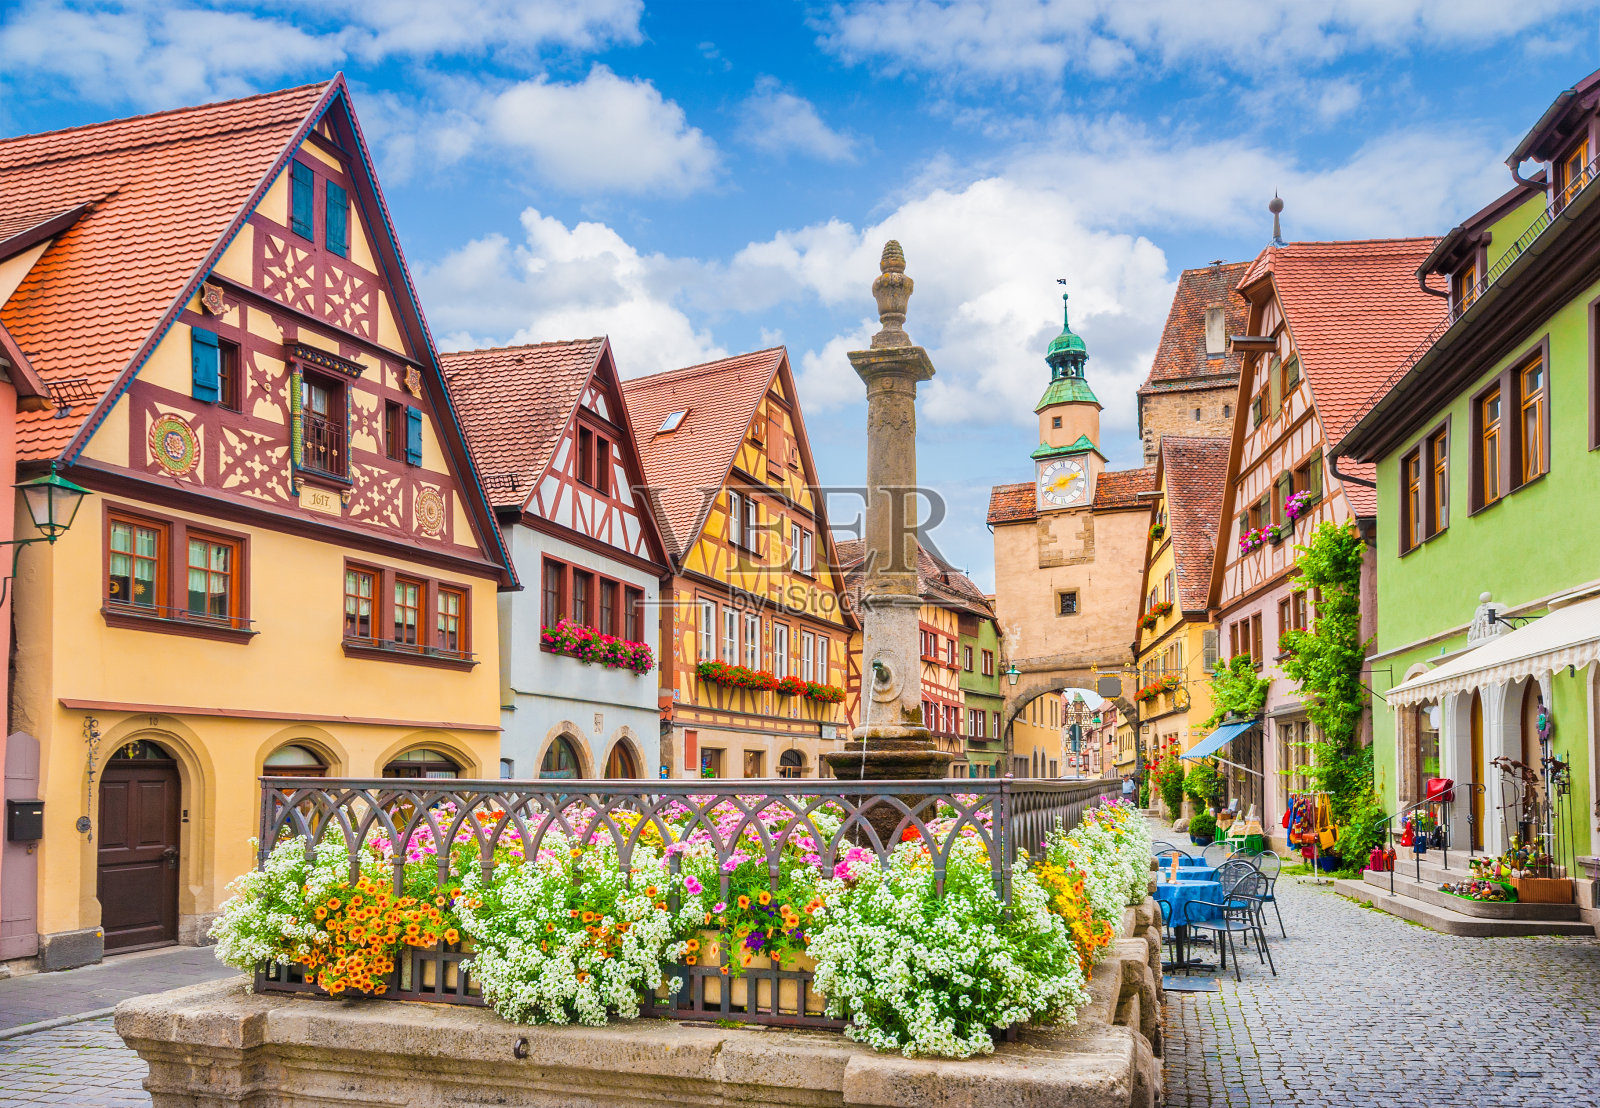 历史小镇Rothenburg ob der Tauber, Franconia, Bavaria, Germany照片摄影图片